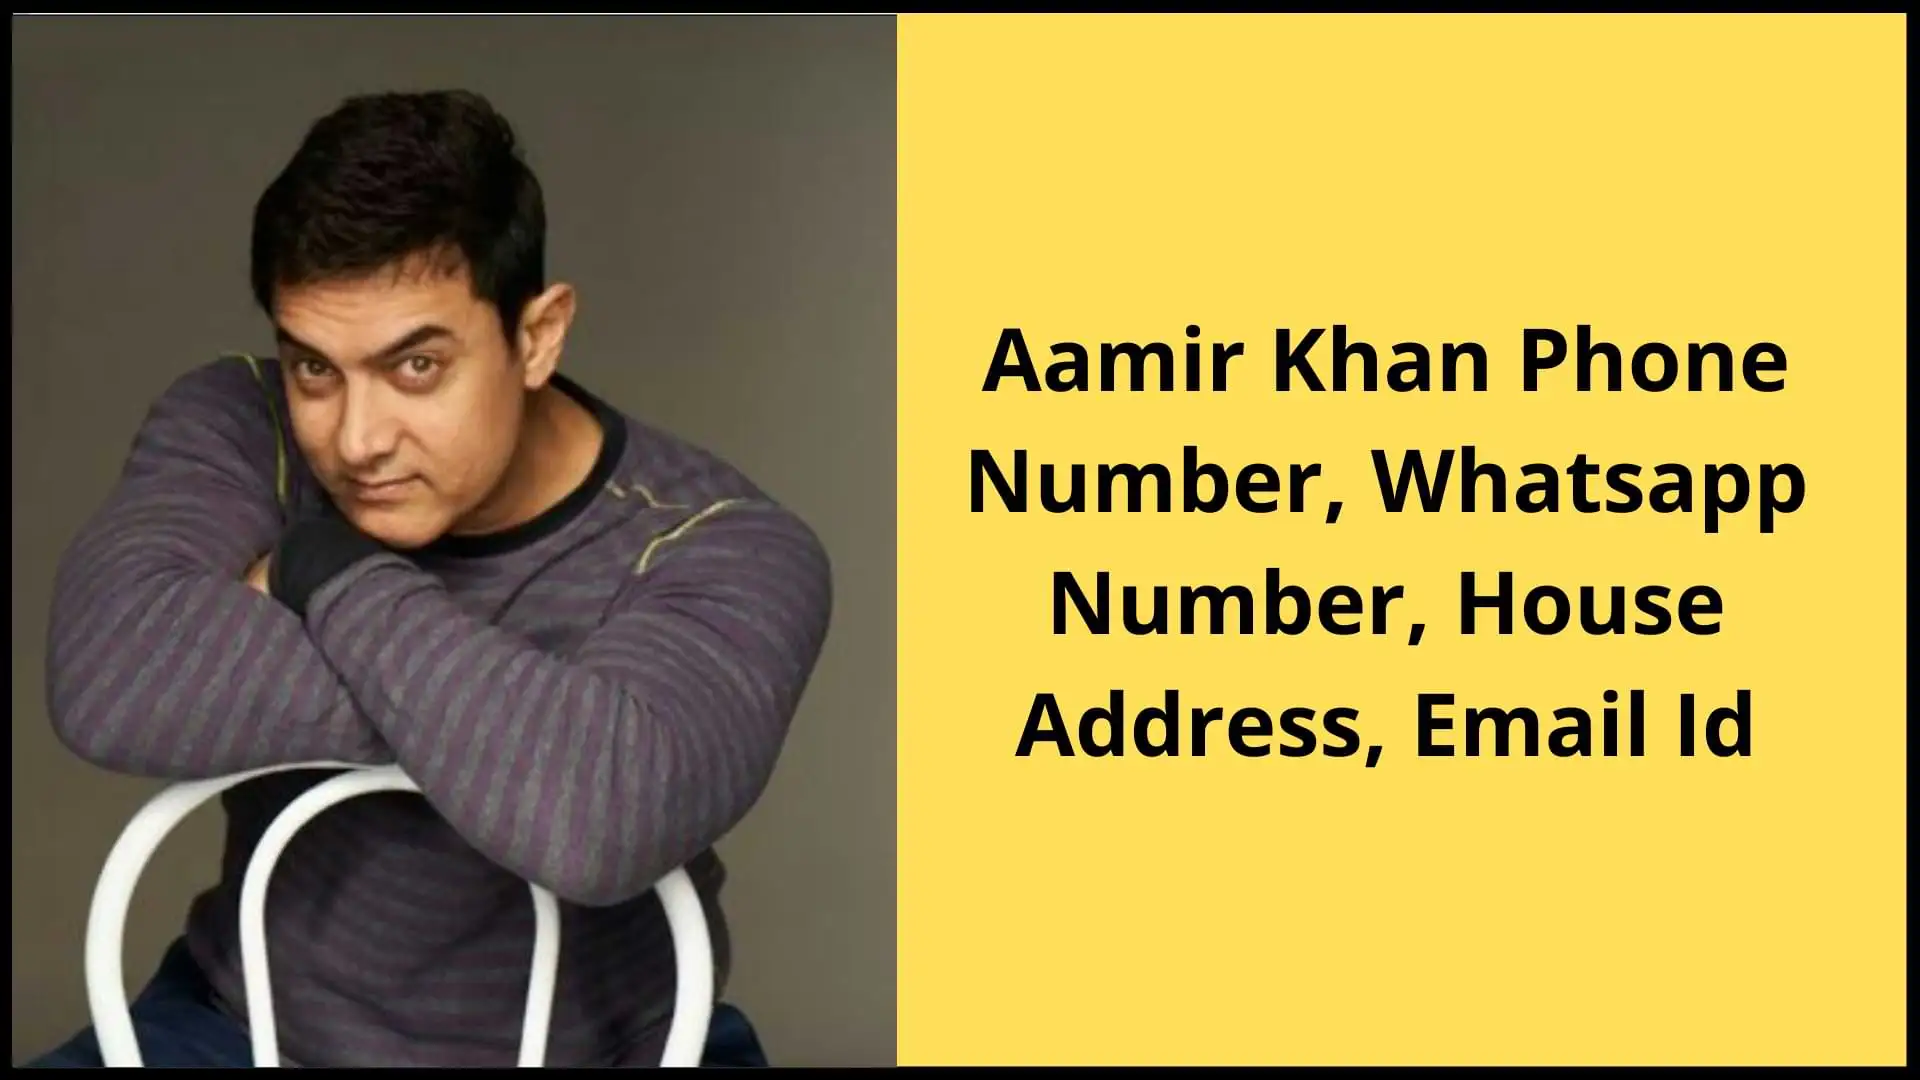 Aamir Khan Phone Number